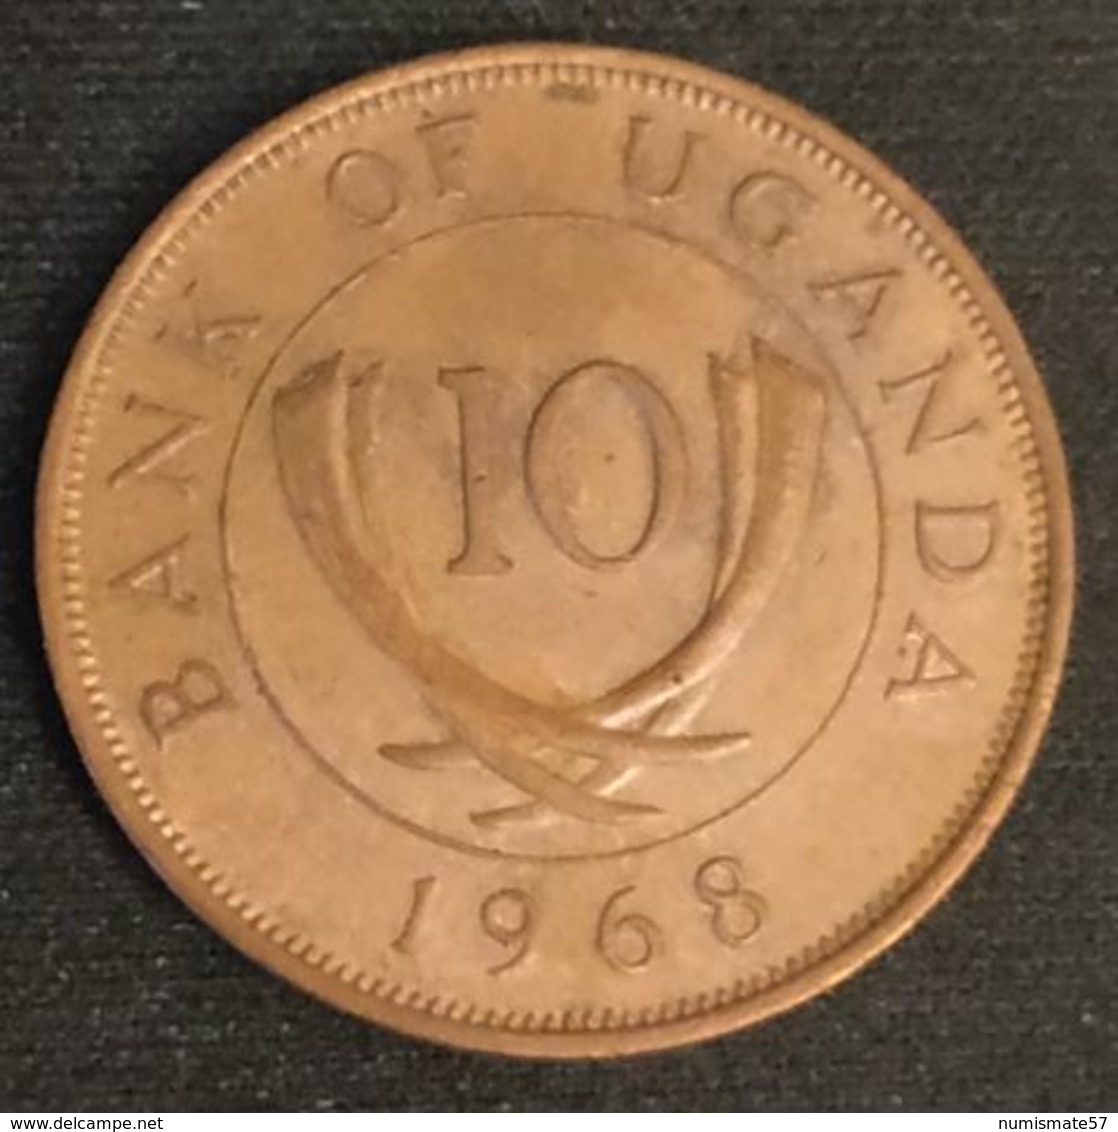 OUGANDA - UGANDA - 10 CENTS 1968 - KM 2 - Uganda